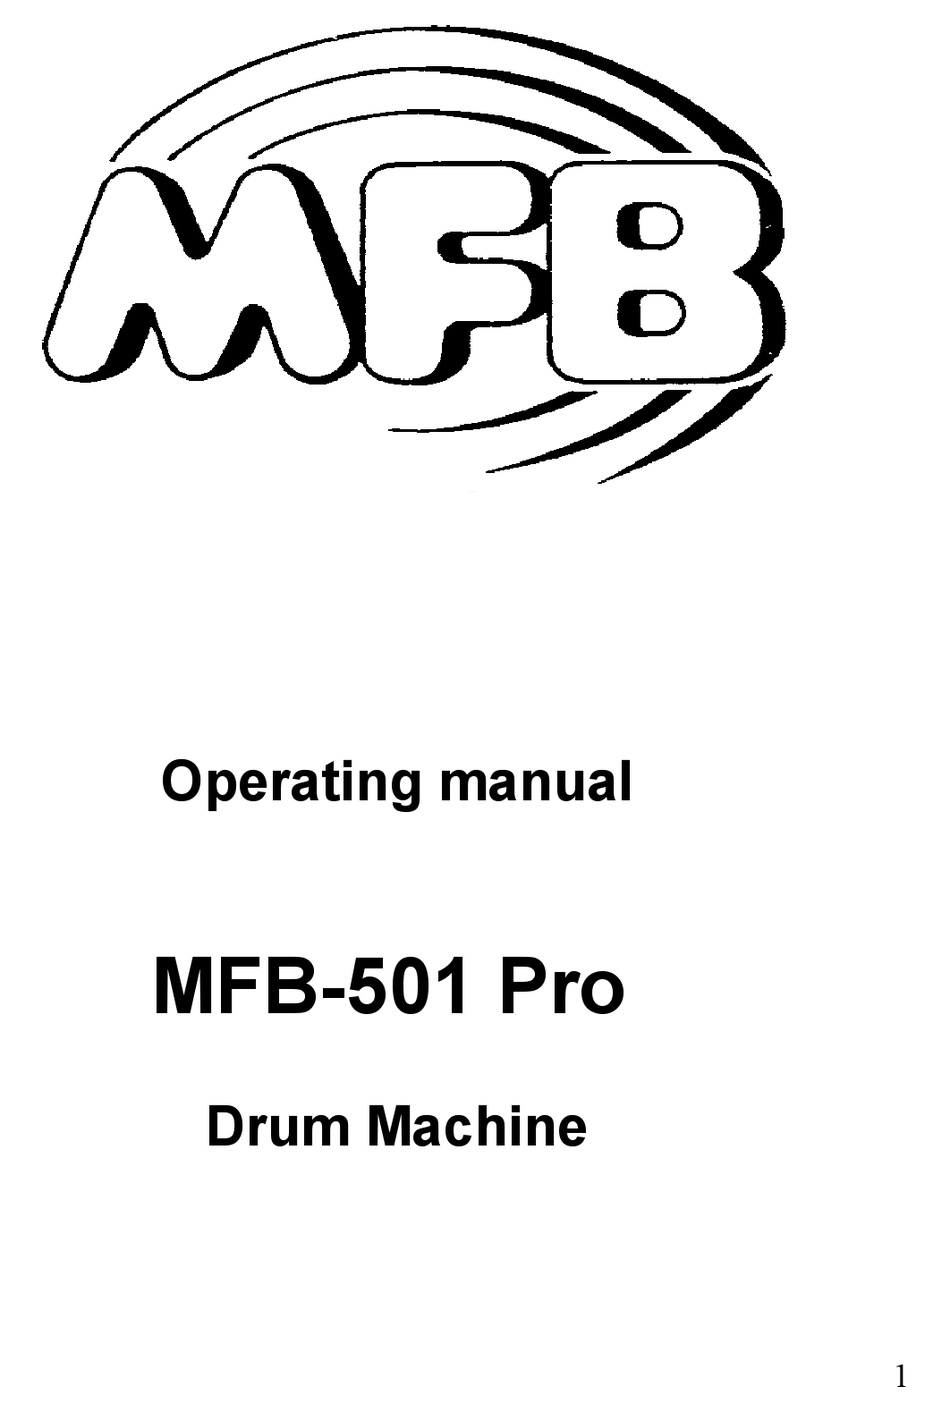 MFB -501 PRO OPERATING MANUAL Pdf Download | ManualsLib